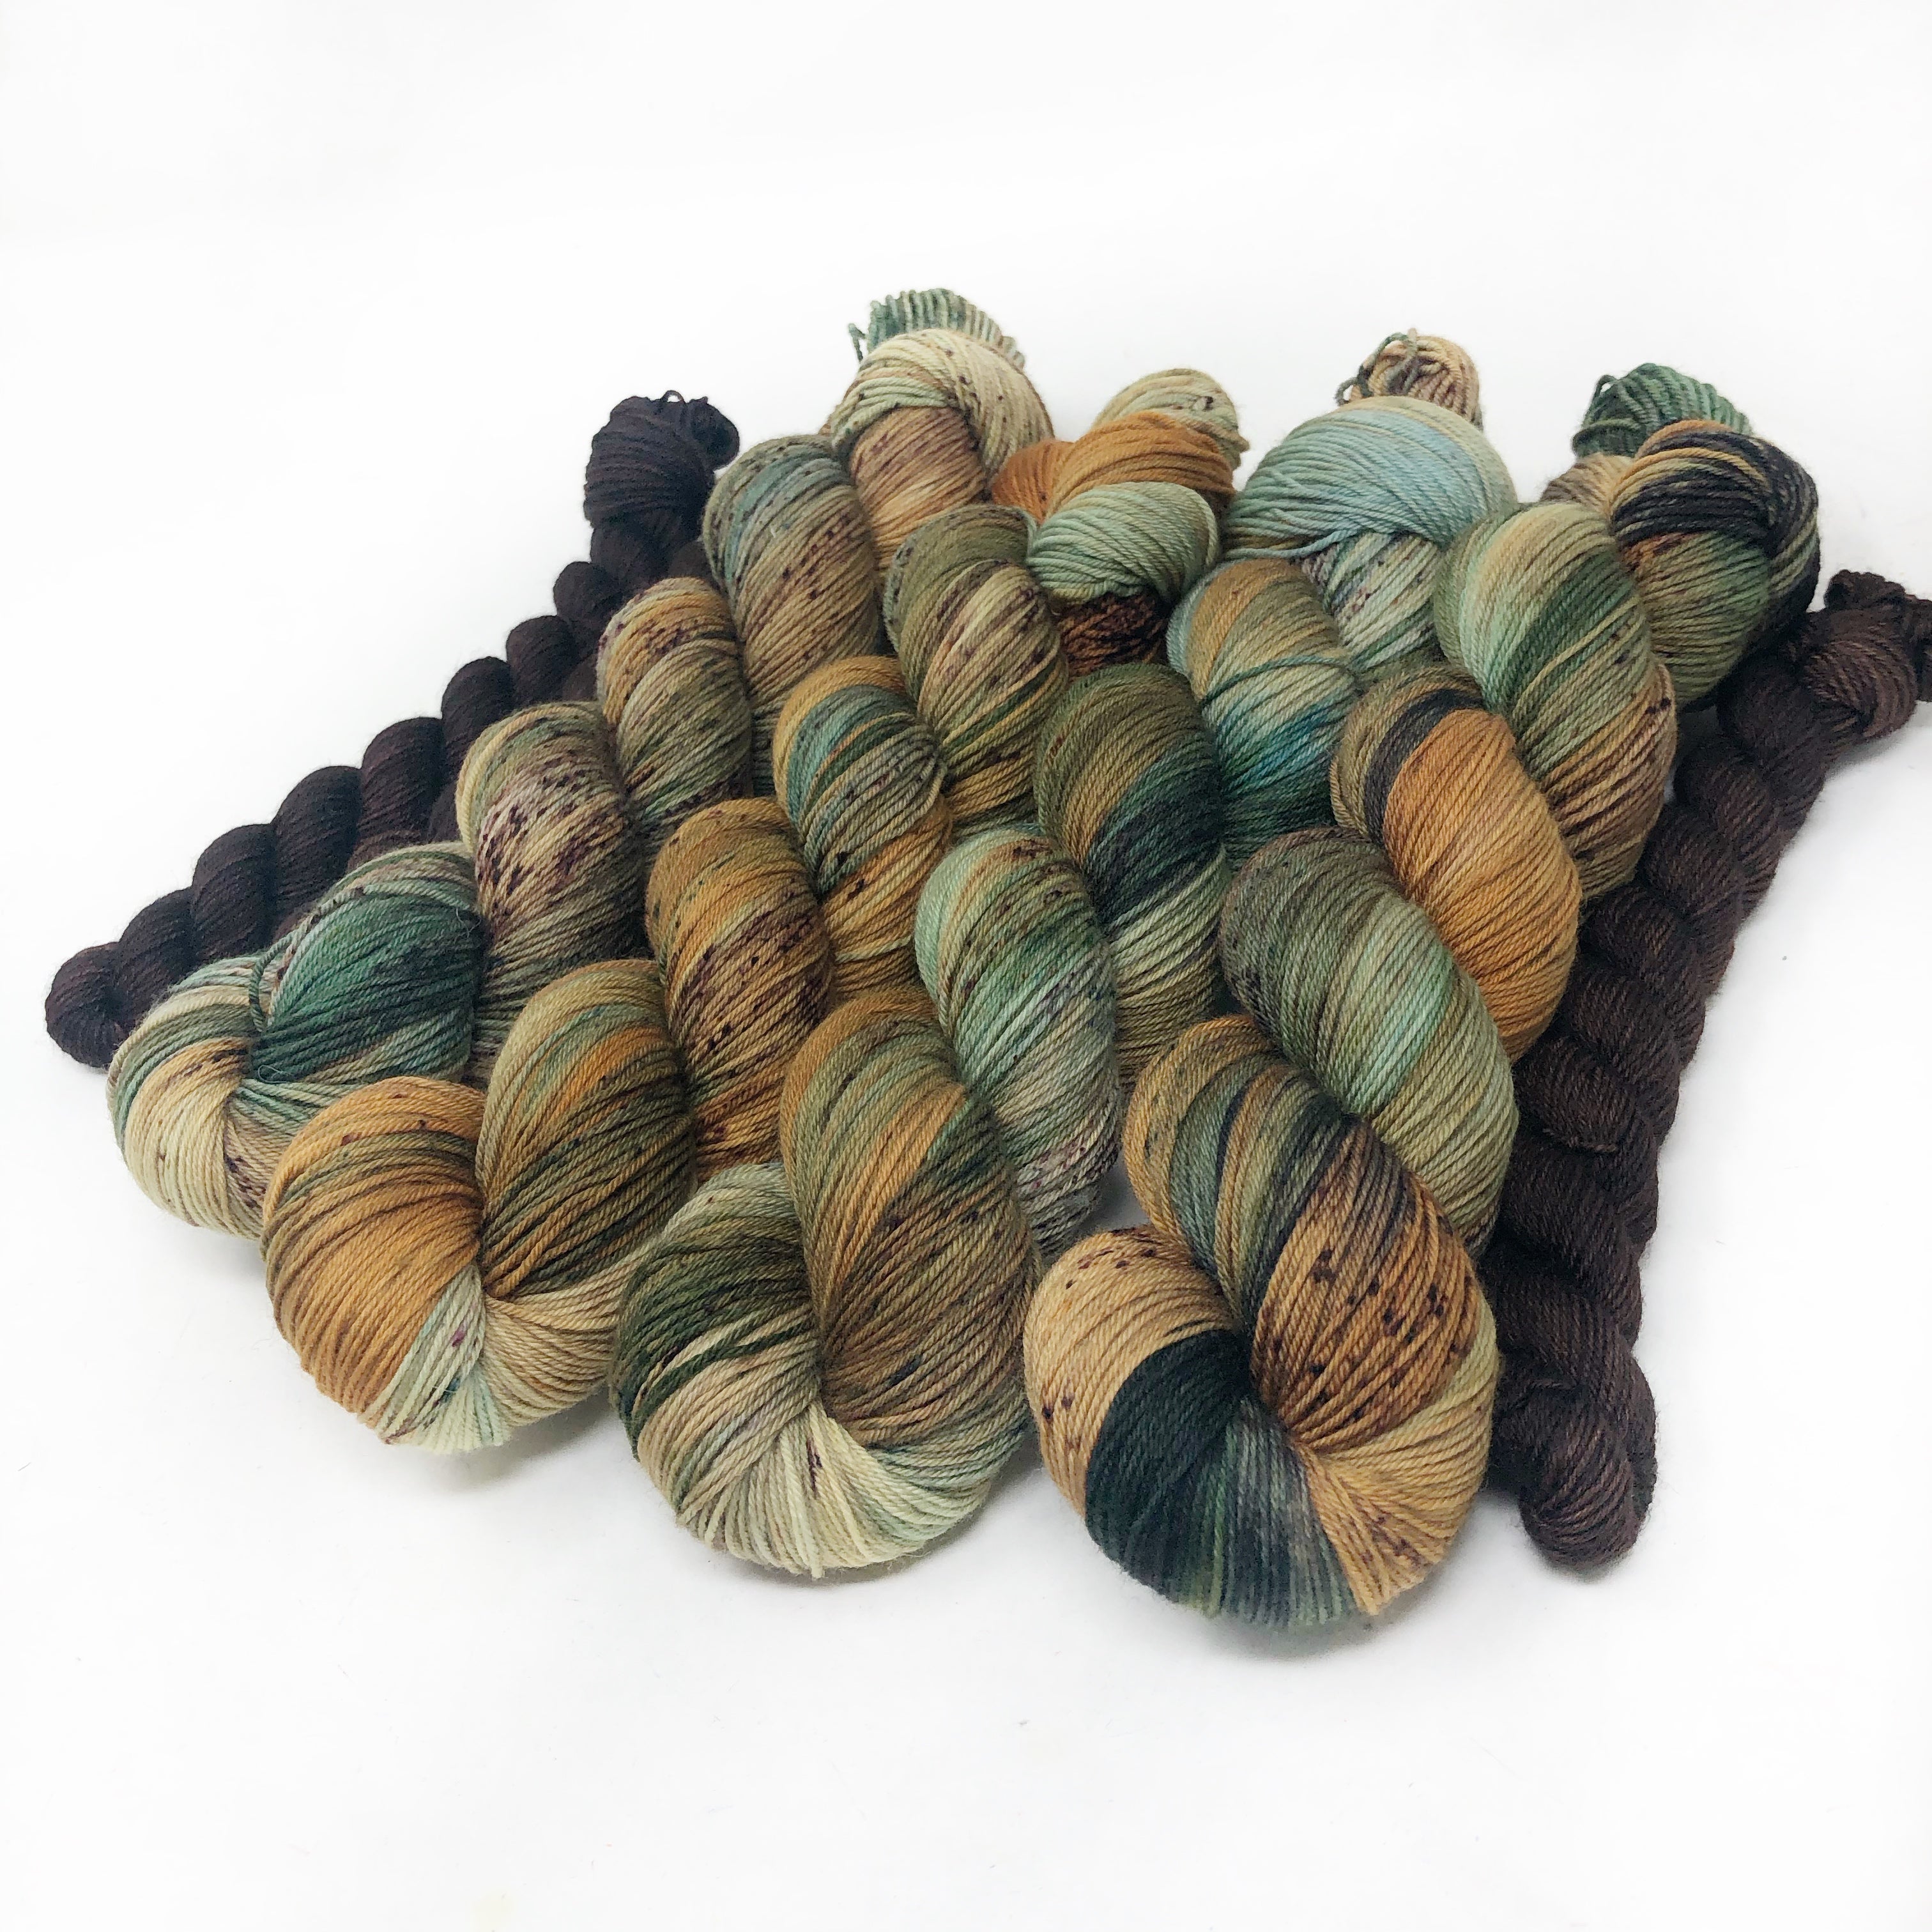 Tumbleweed - sock yarn with mini